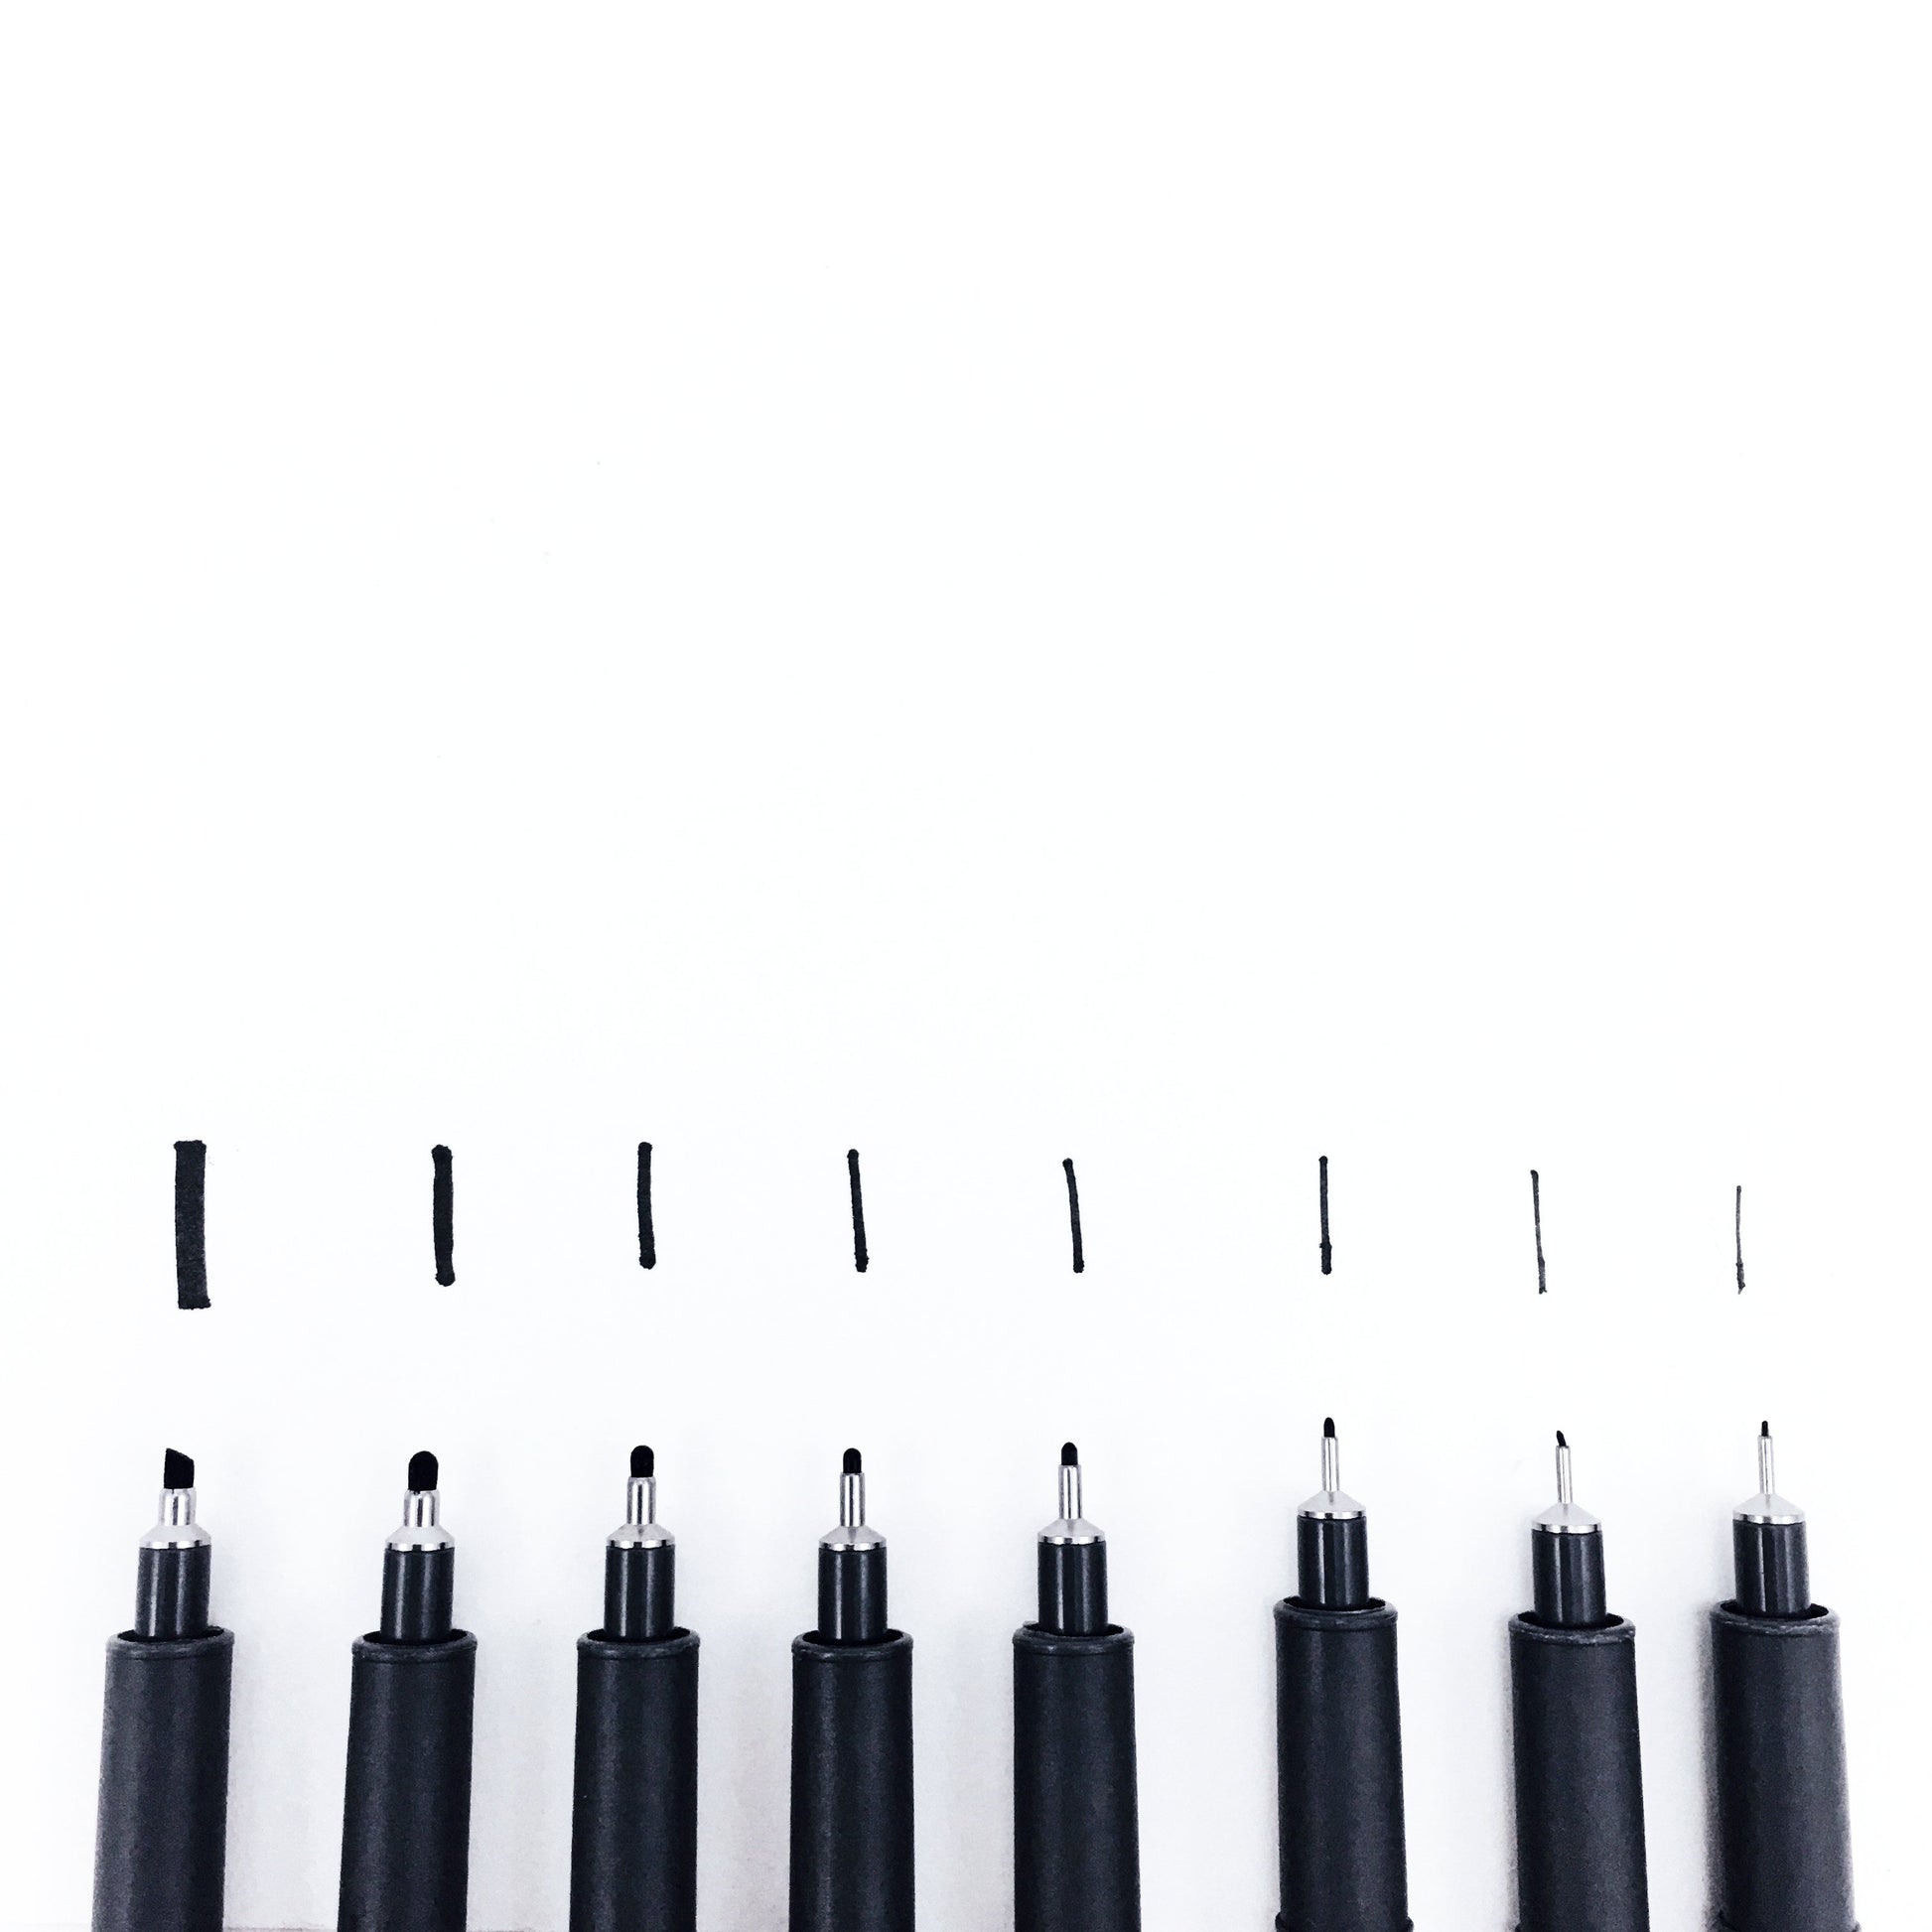 Staedtler 0.1 mm Pigment Liner Black Fineliner Sketching Drawing Drafting  Pens Pack of 5